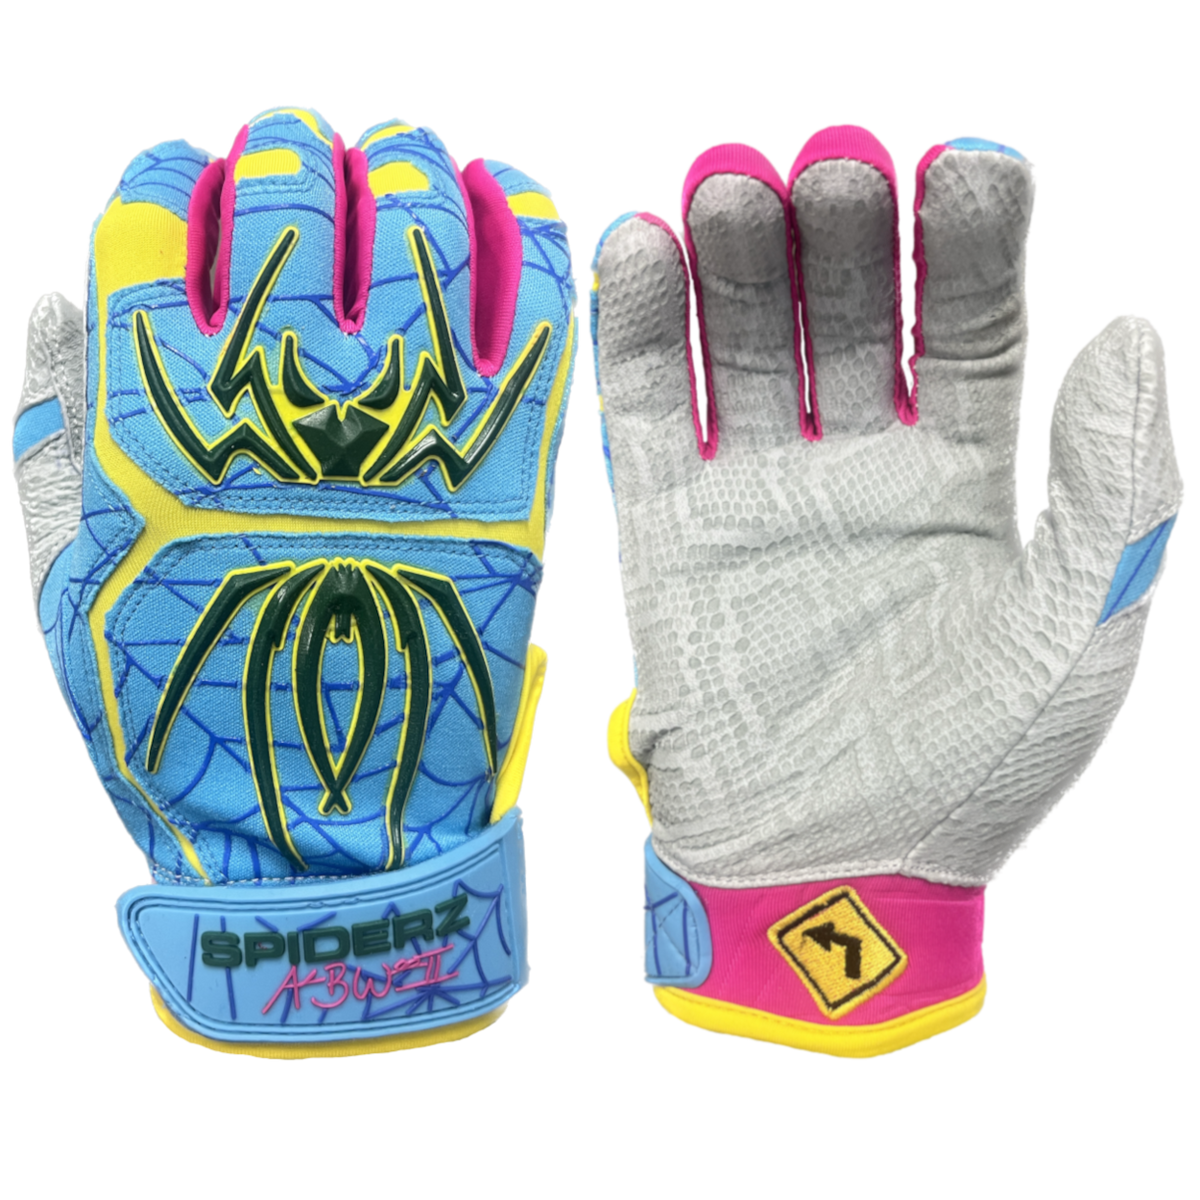 Spiderz ENDITE Batting Gloves - 